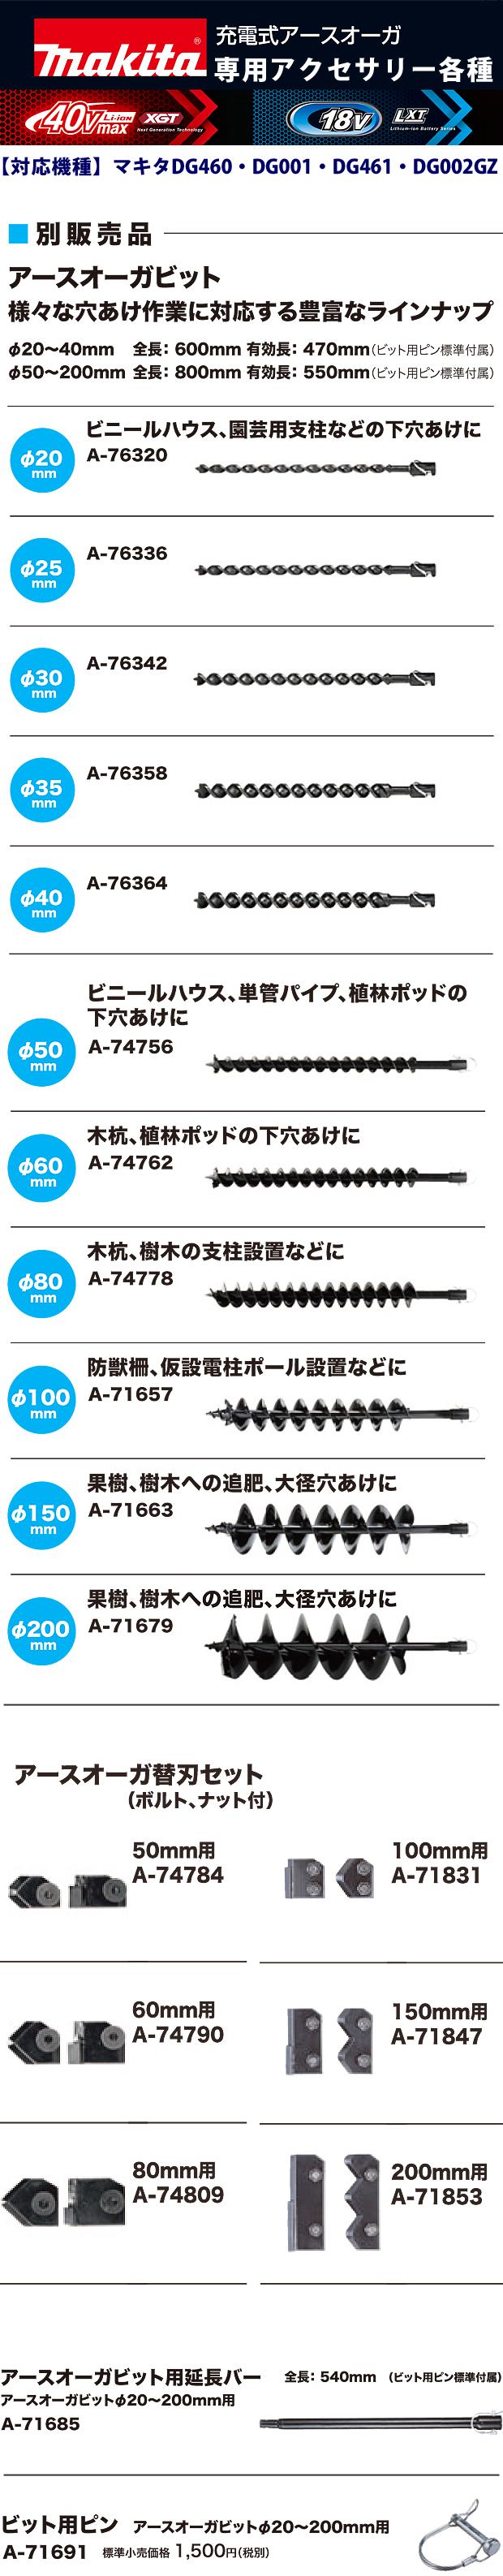 マキタ(Makita) アースオーガビット200ミリ A-71679 - 4